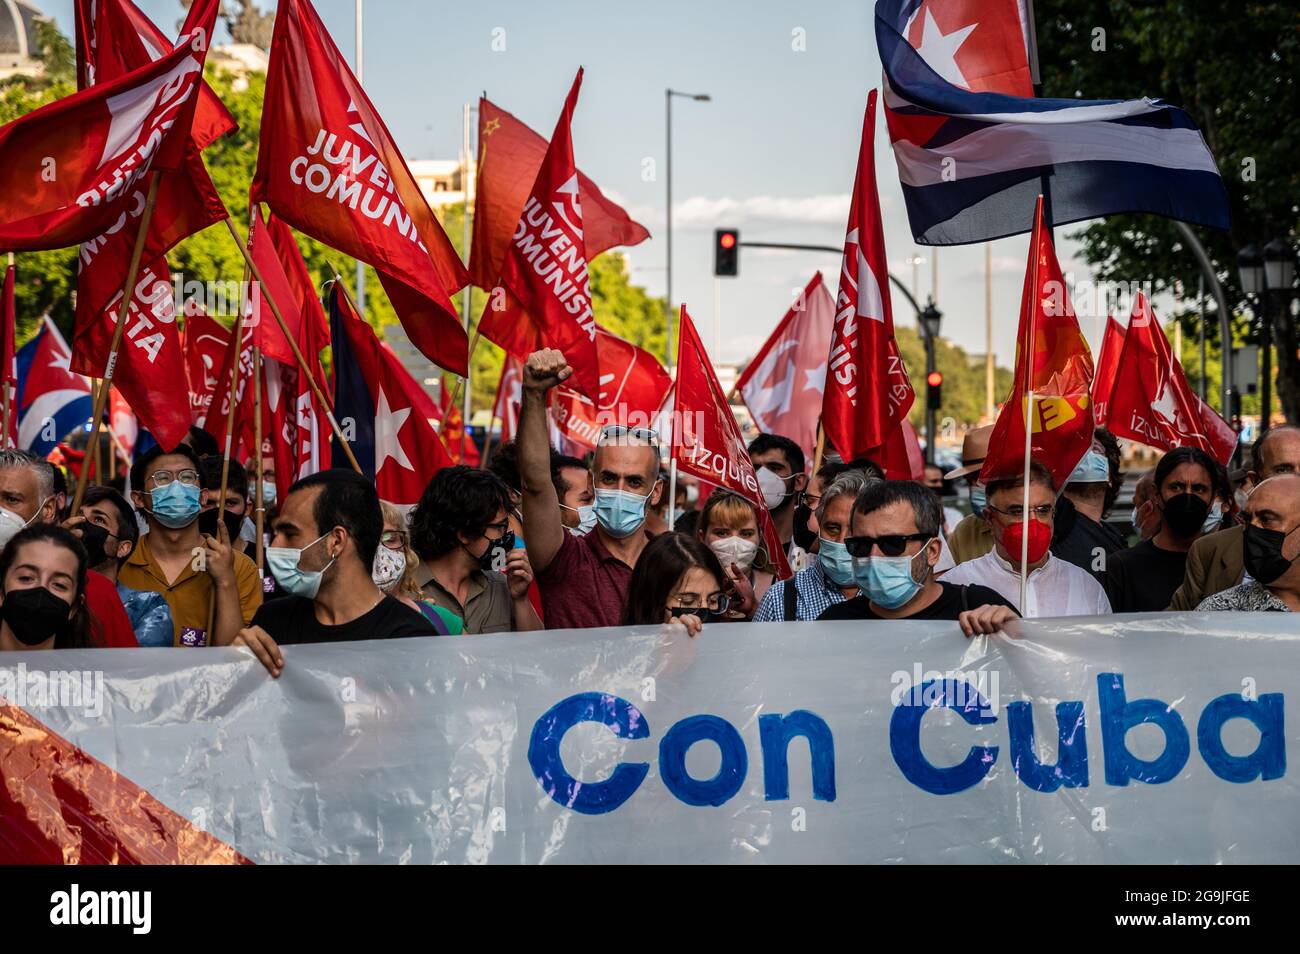 Madrid, Spagna. 26 luglio 2021. Manifestanti con bandiere e cartelli durante una manifestazione contro l’embargo economico statunitense su Cuba, in coincidenza con il 26 luglio, giorno in cui la rivoluzione cubana è iniziata nel 1953, 68 anni fa. Credit: Marcos del Mazo/Alamy Live News Foto Stock